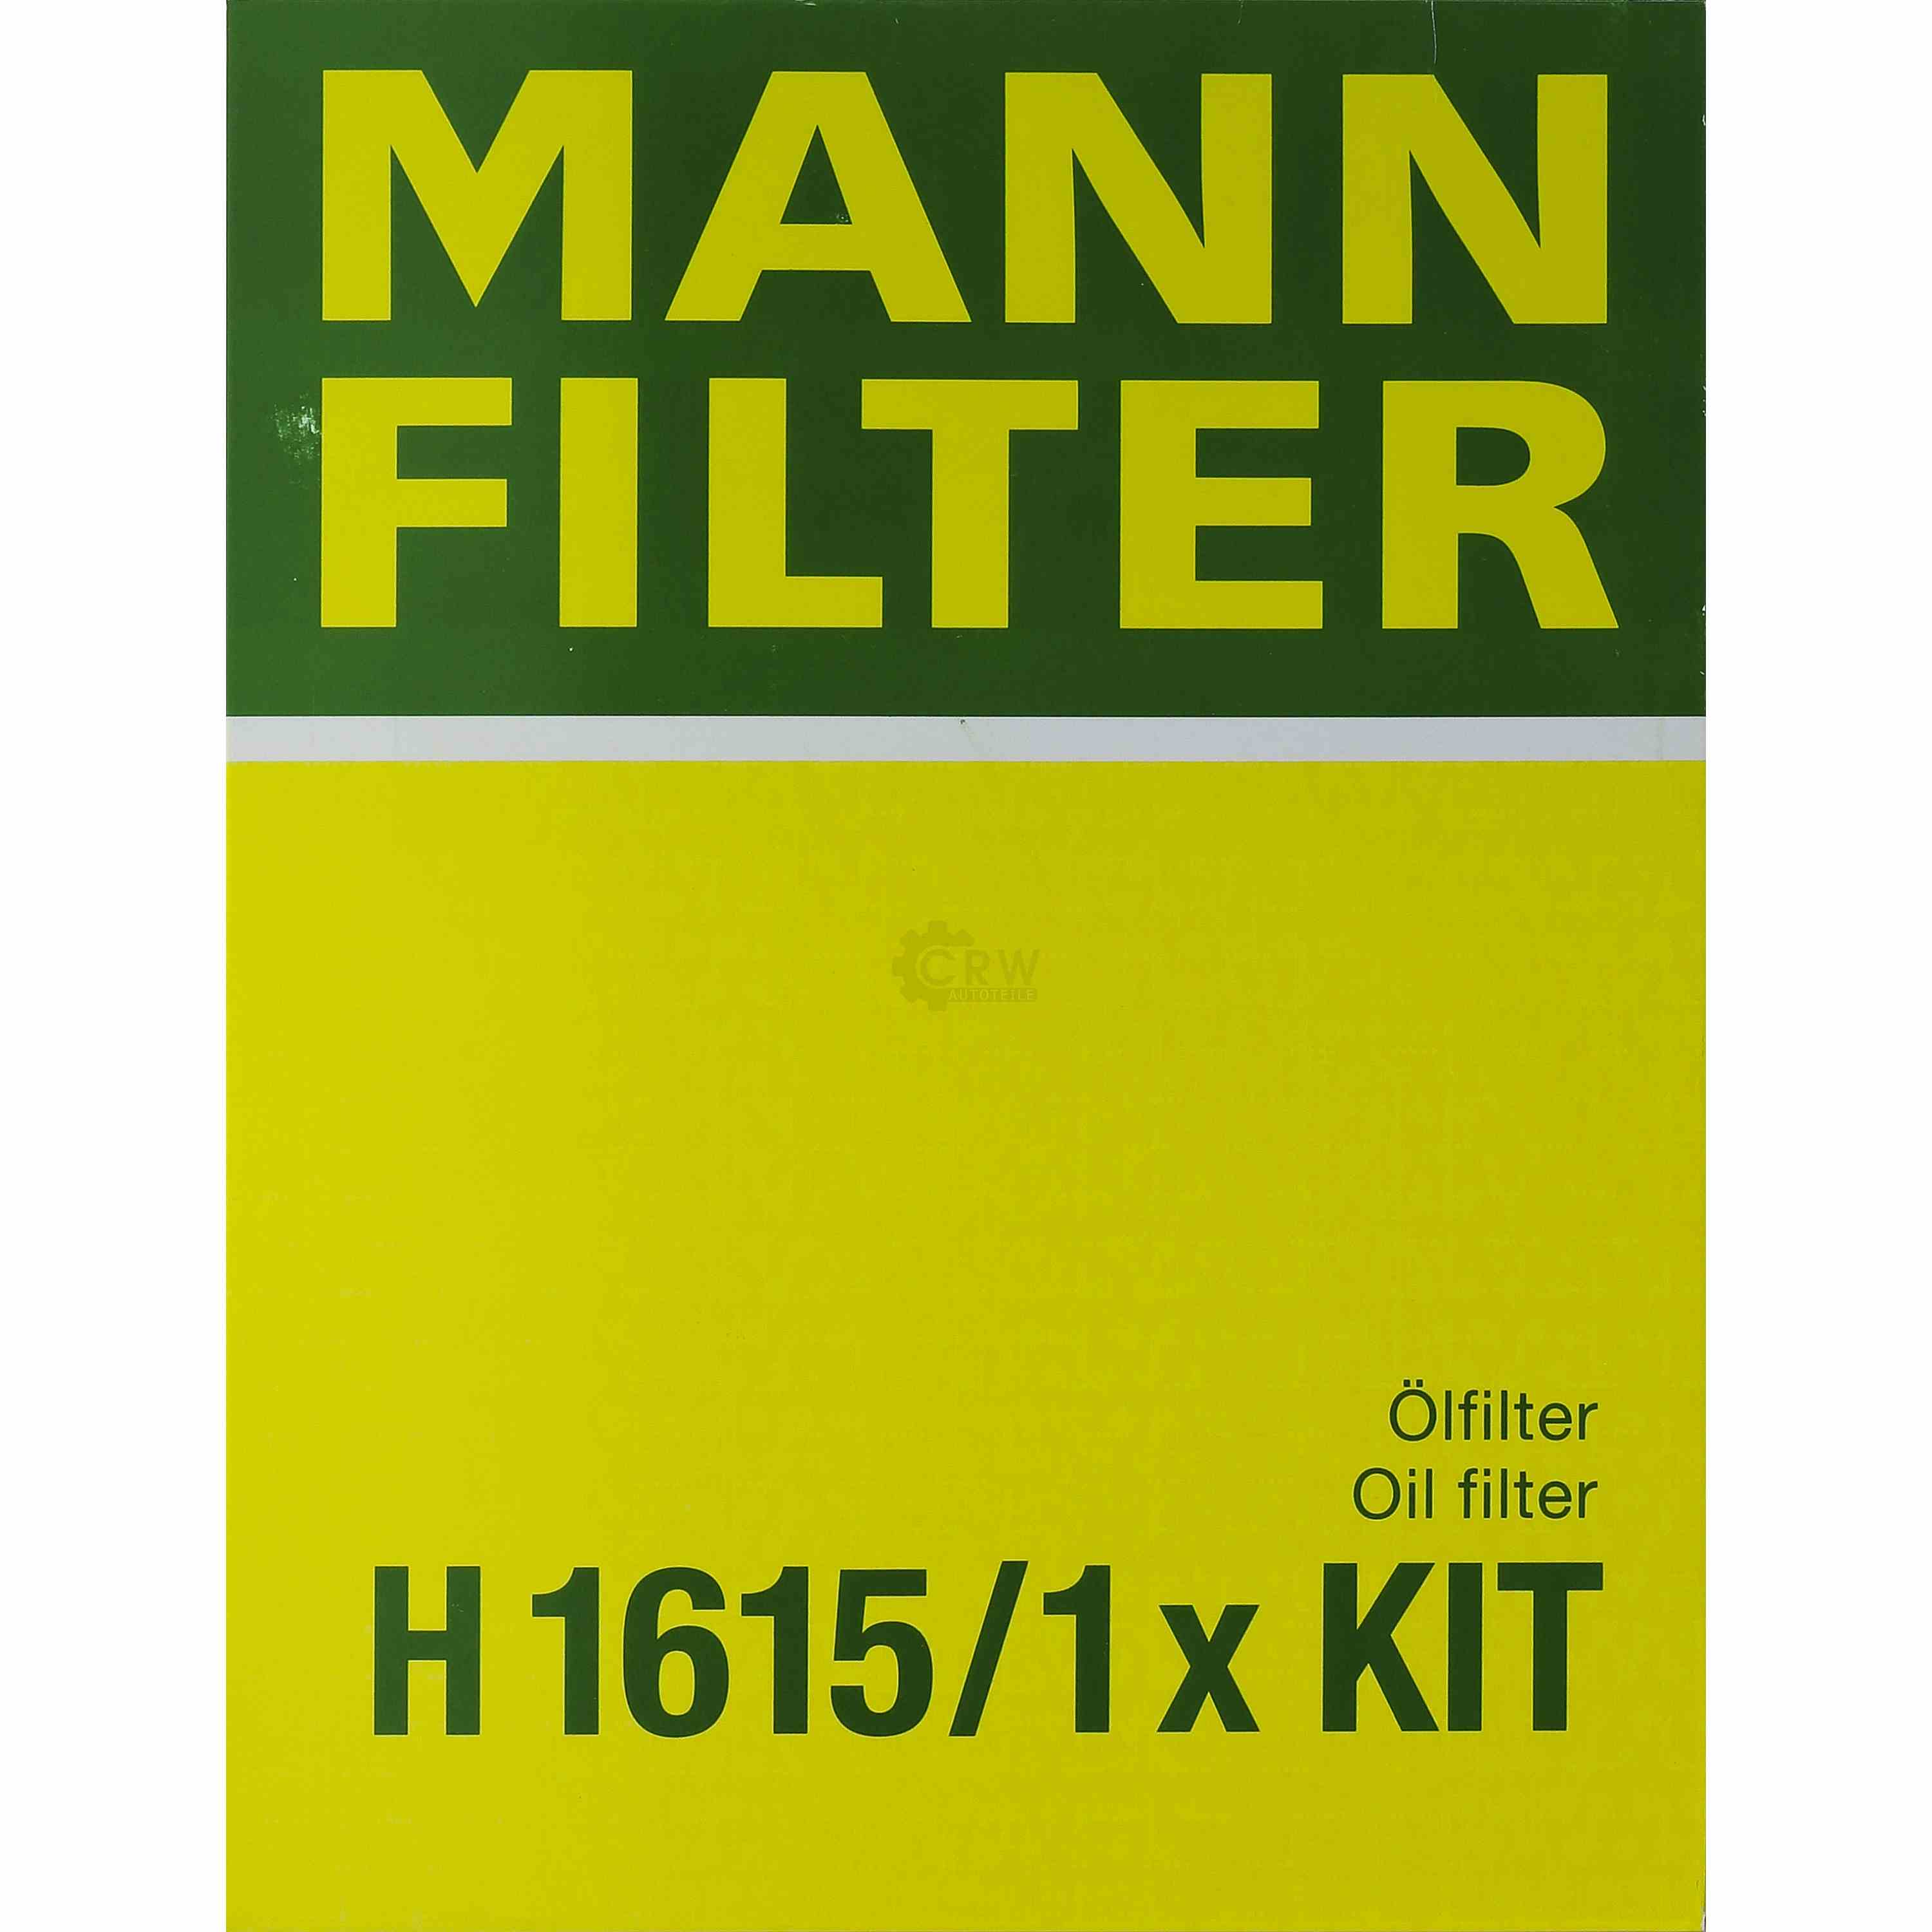 MANN-FILTER Getriebeölfilter für Automatikgetriebe H 1615/1 x KIT